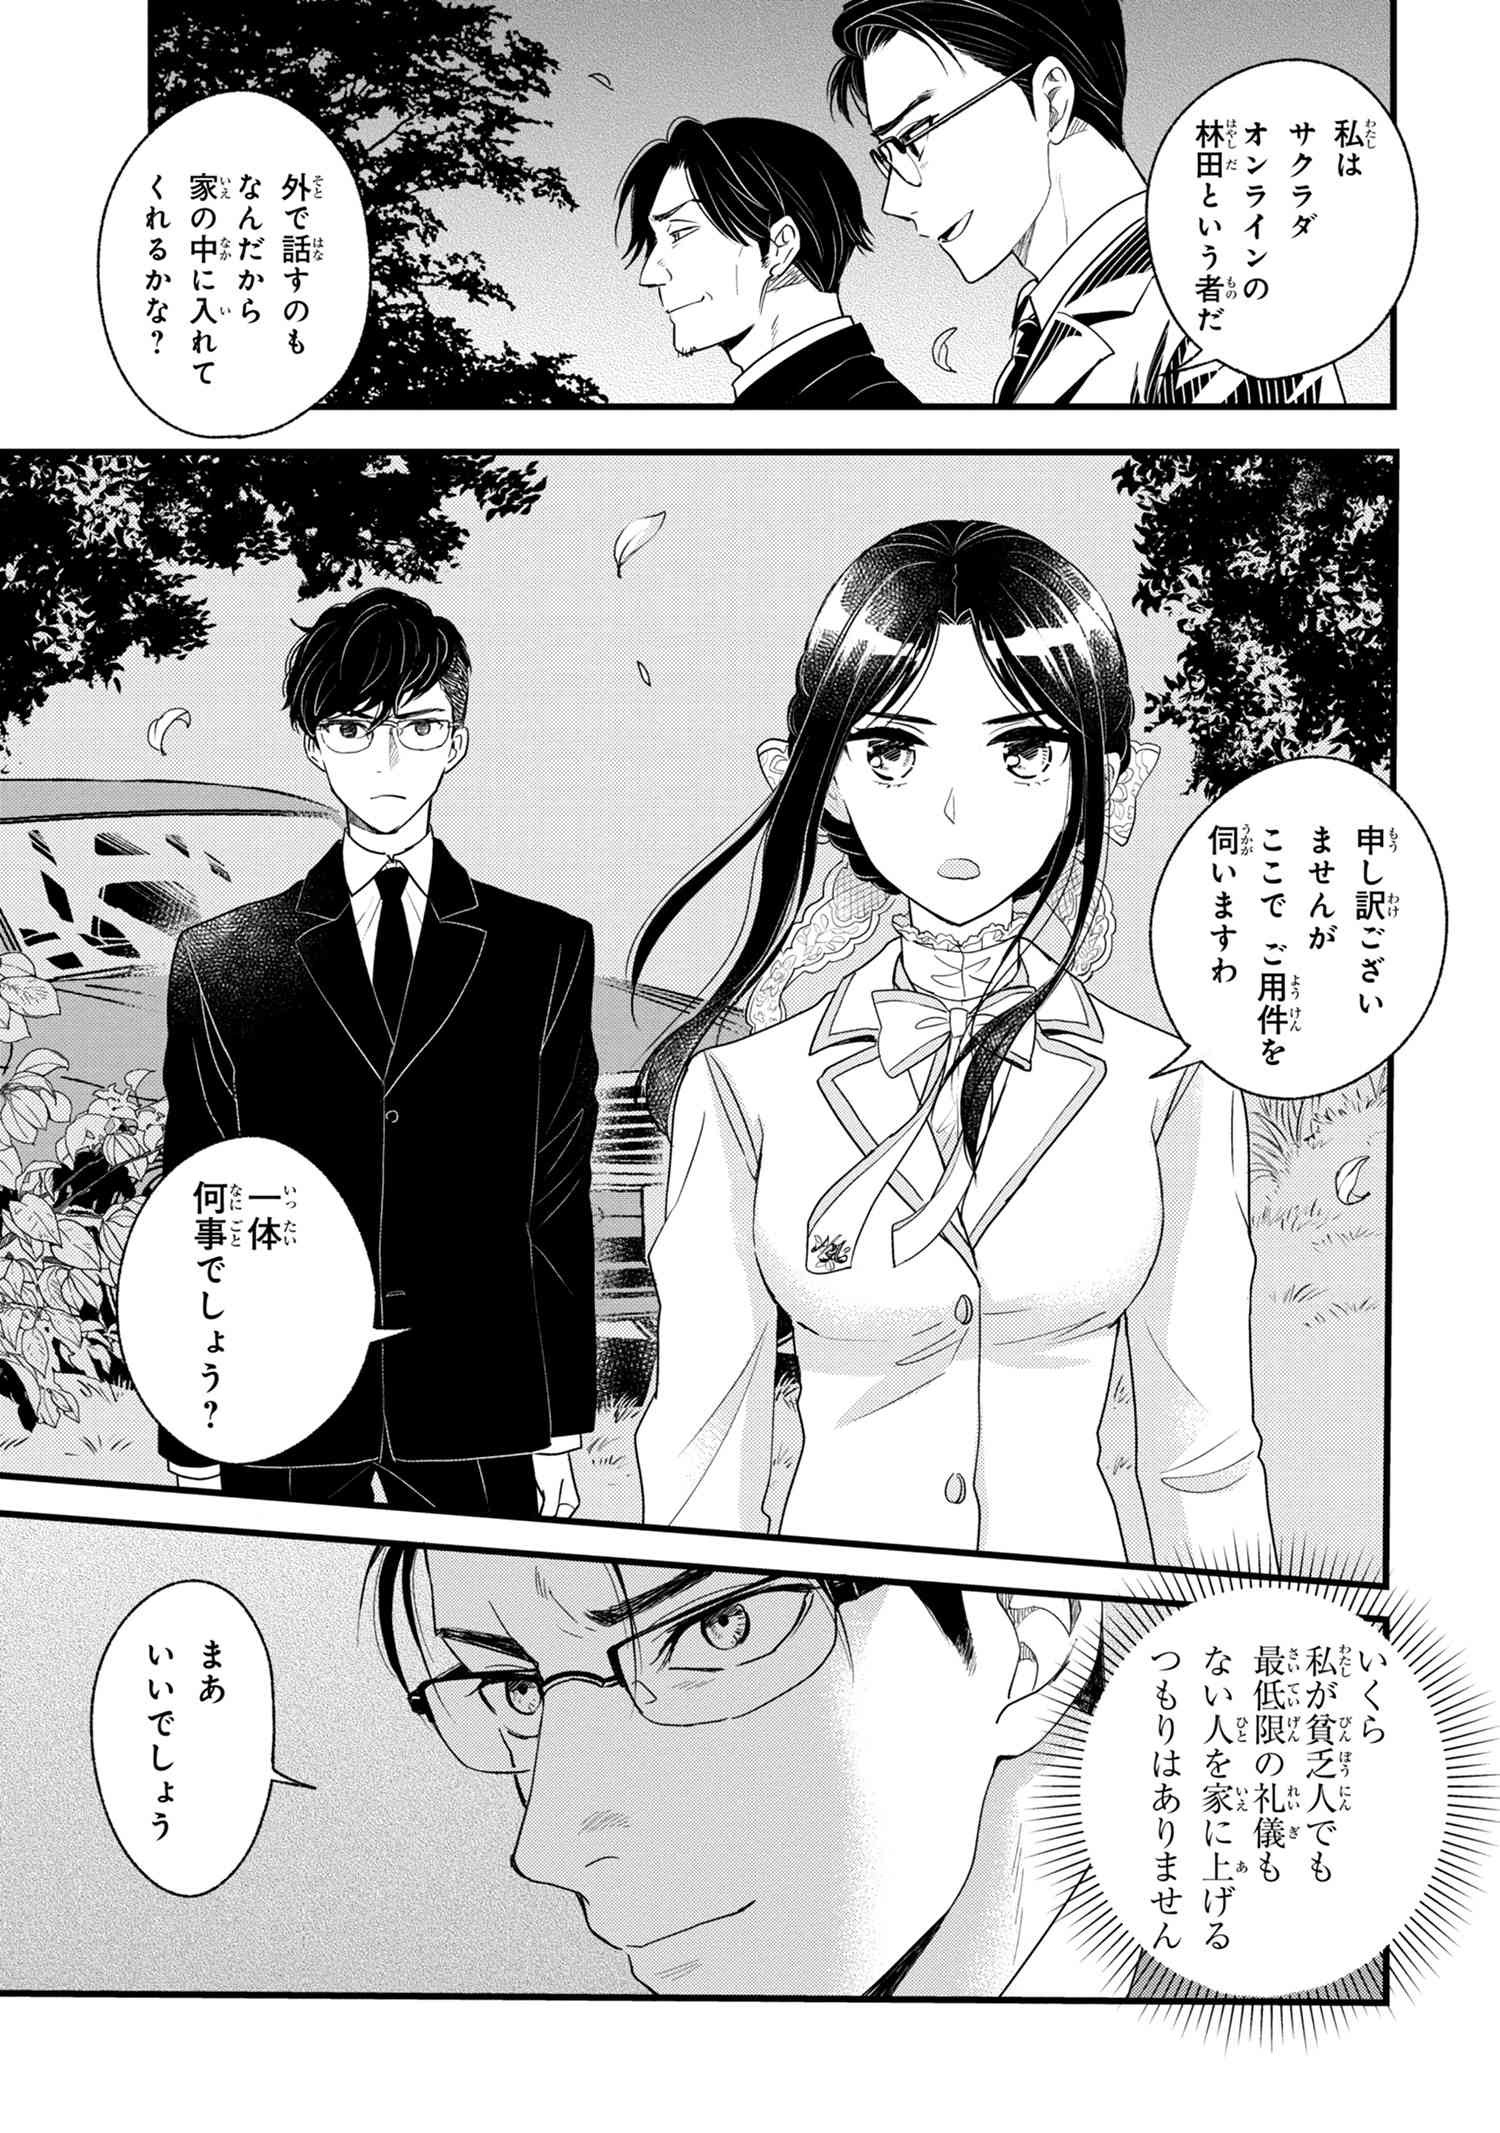 Reiko no Fuugi Akuyaku Reijou to Yobarete imasu ga, tada no Binbou Musume desu - Chapter 6-1 - Page 1